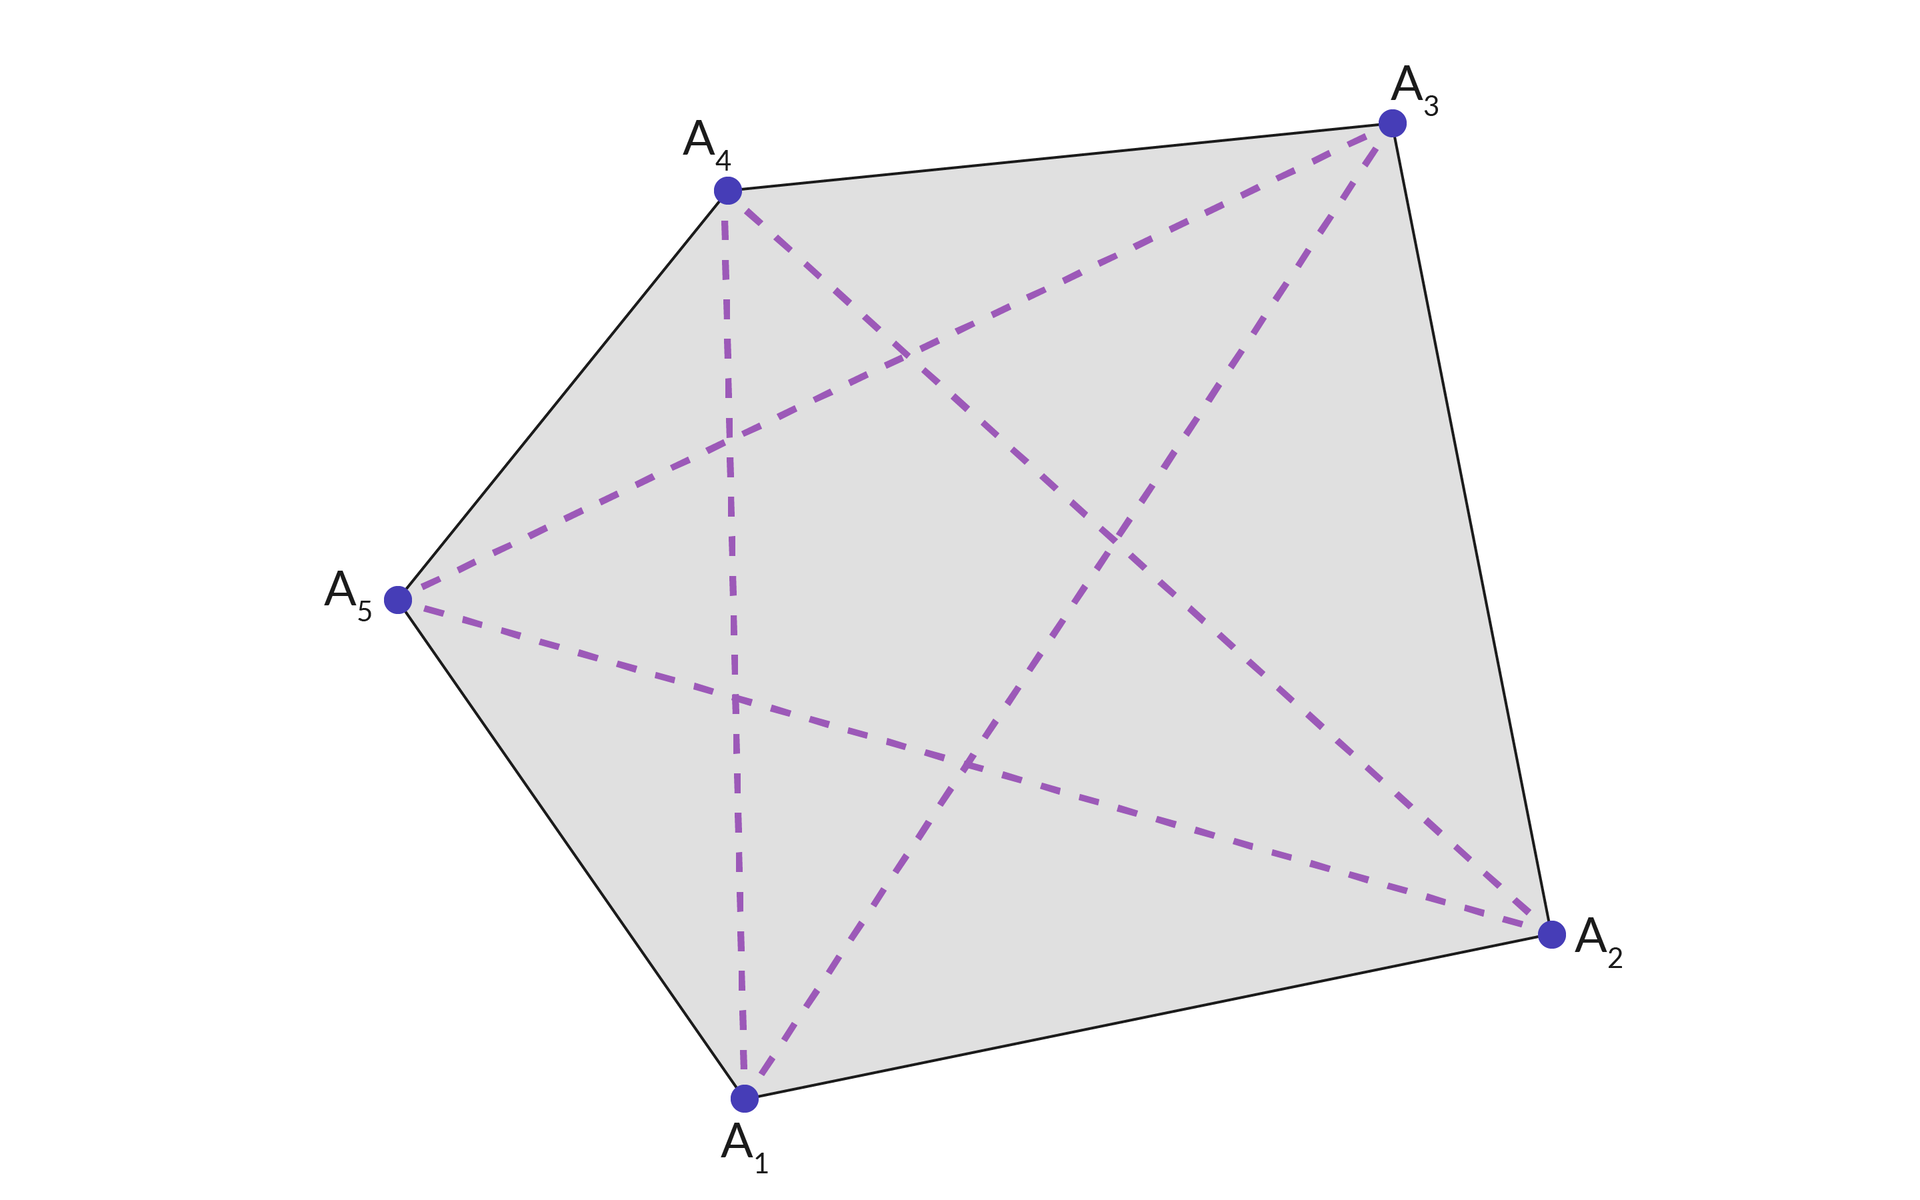 Ilustracja przedstawia pięciokąt o wierzchołkach od A1 do A5. Wierzchołki są wyróżnione jako zamalowane punkty i są ze sobą połączone liniami przerywanymi, które tworzą pięcioramienną gwiazdę. Wnętrze wielokąta jest zamalowane.